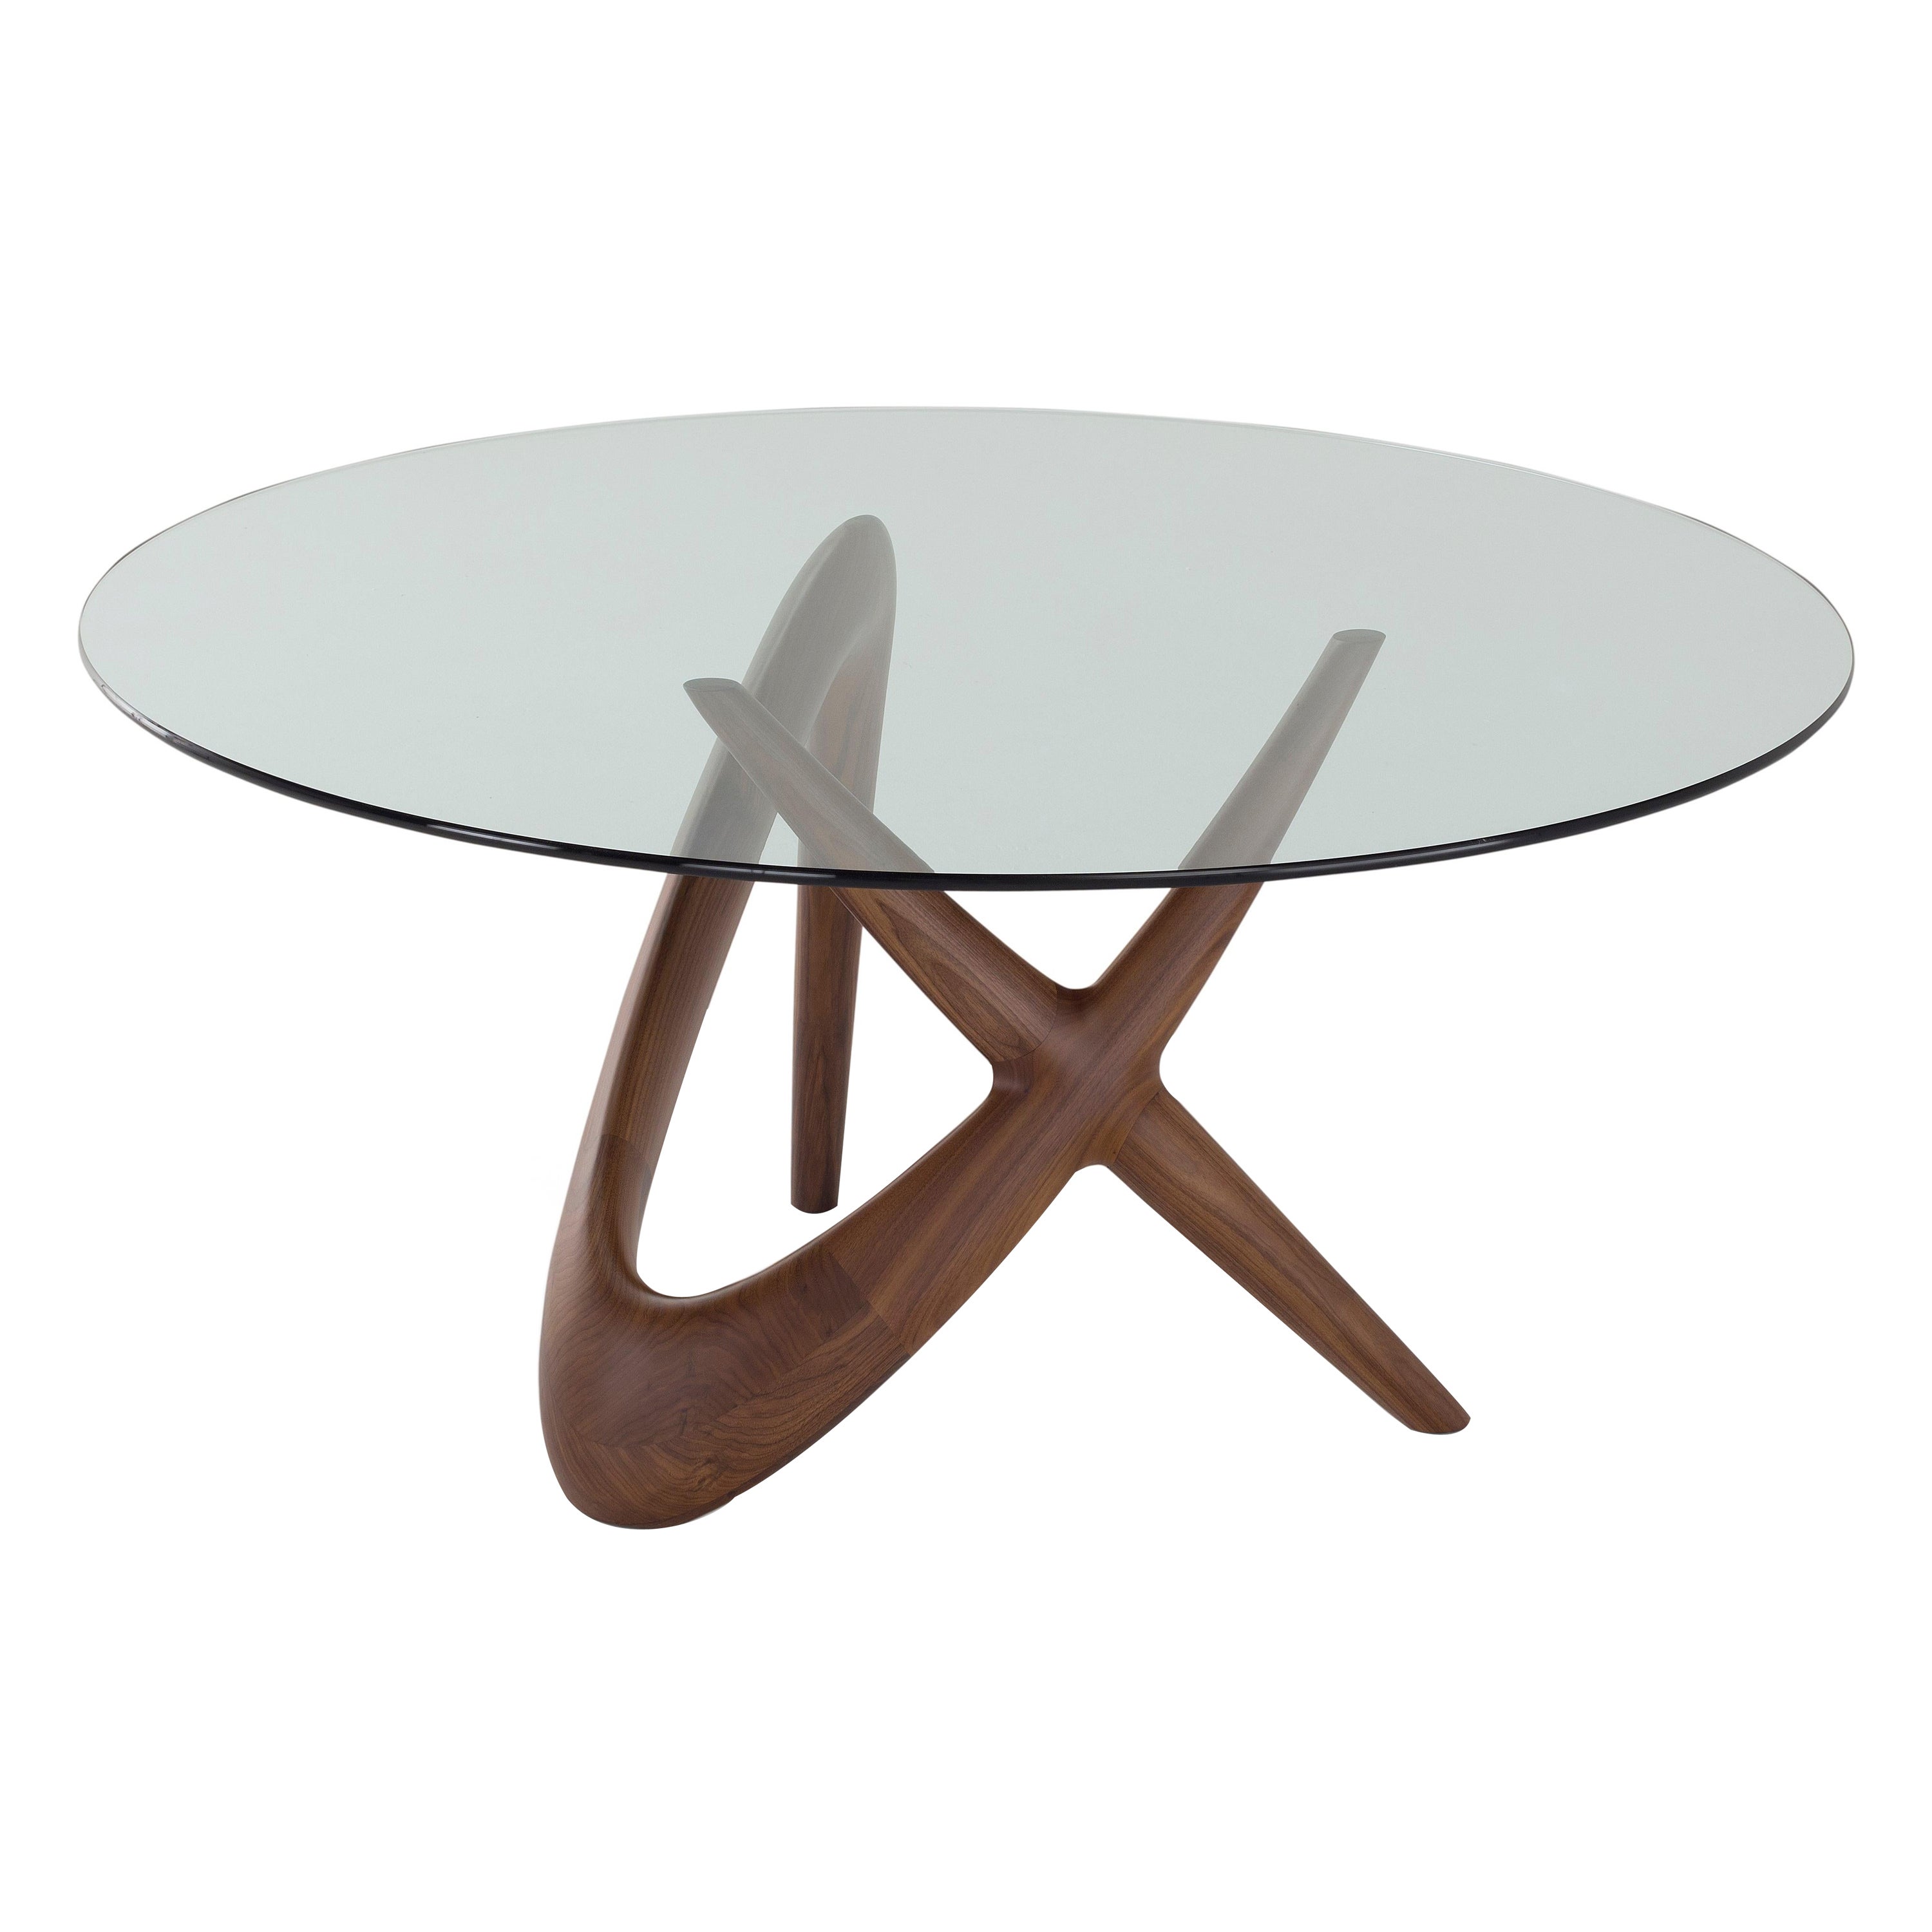 Table ronde contemporaine « NX », base en bois et plateau en verre